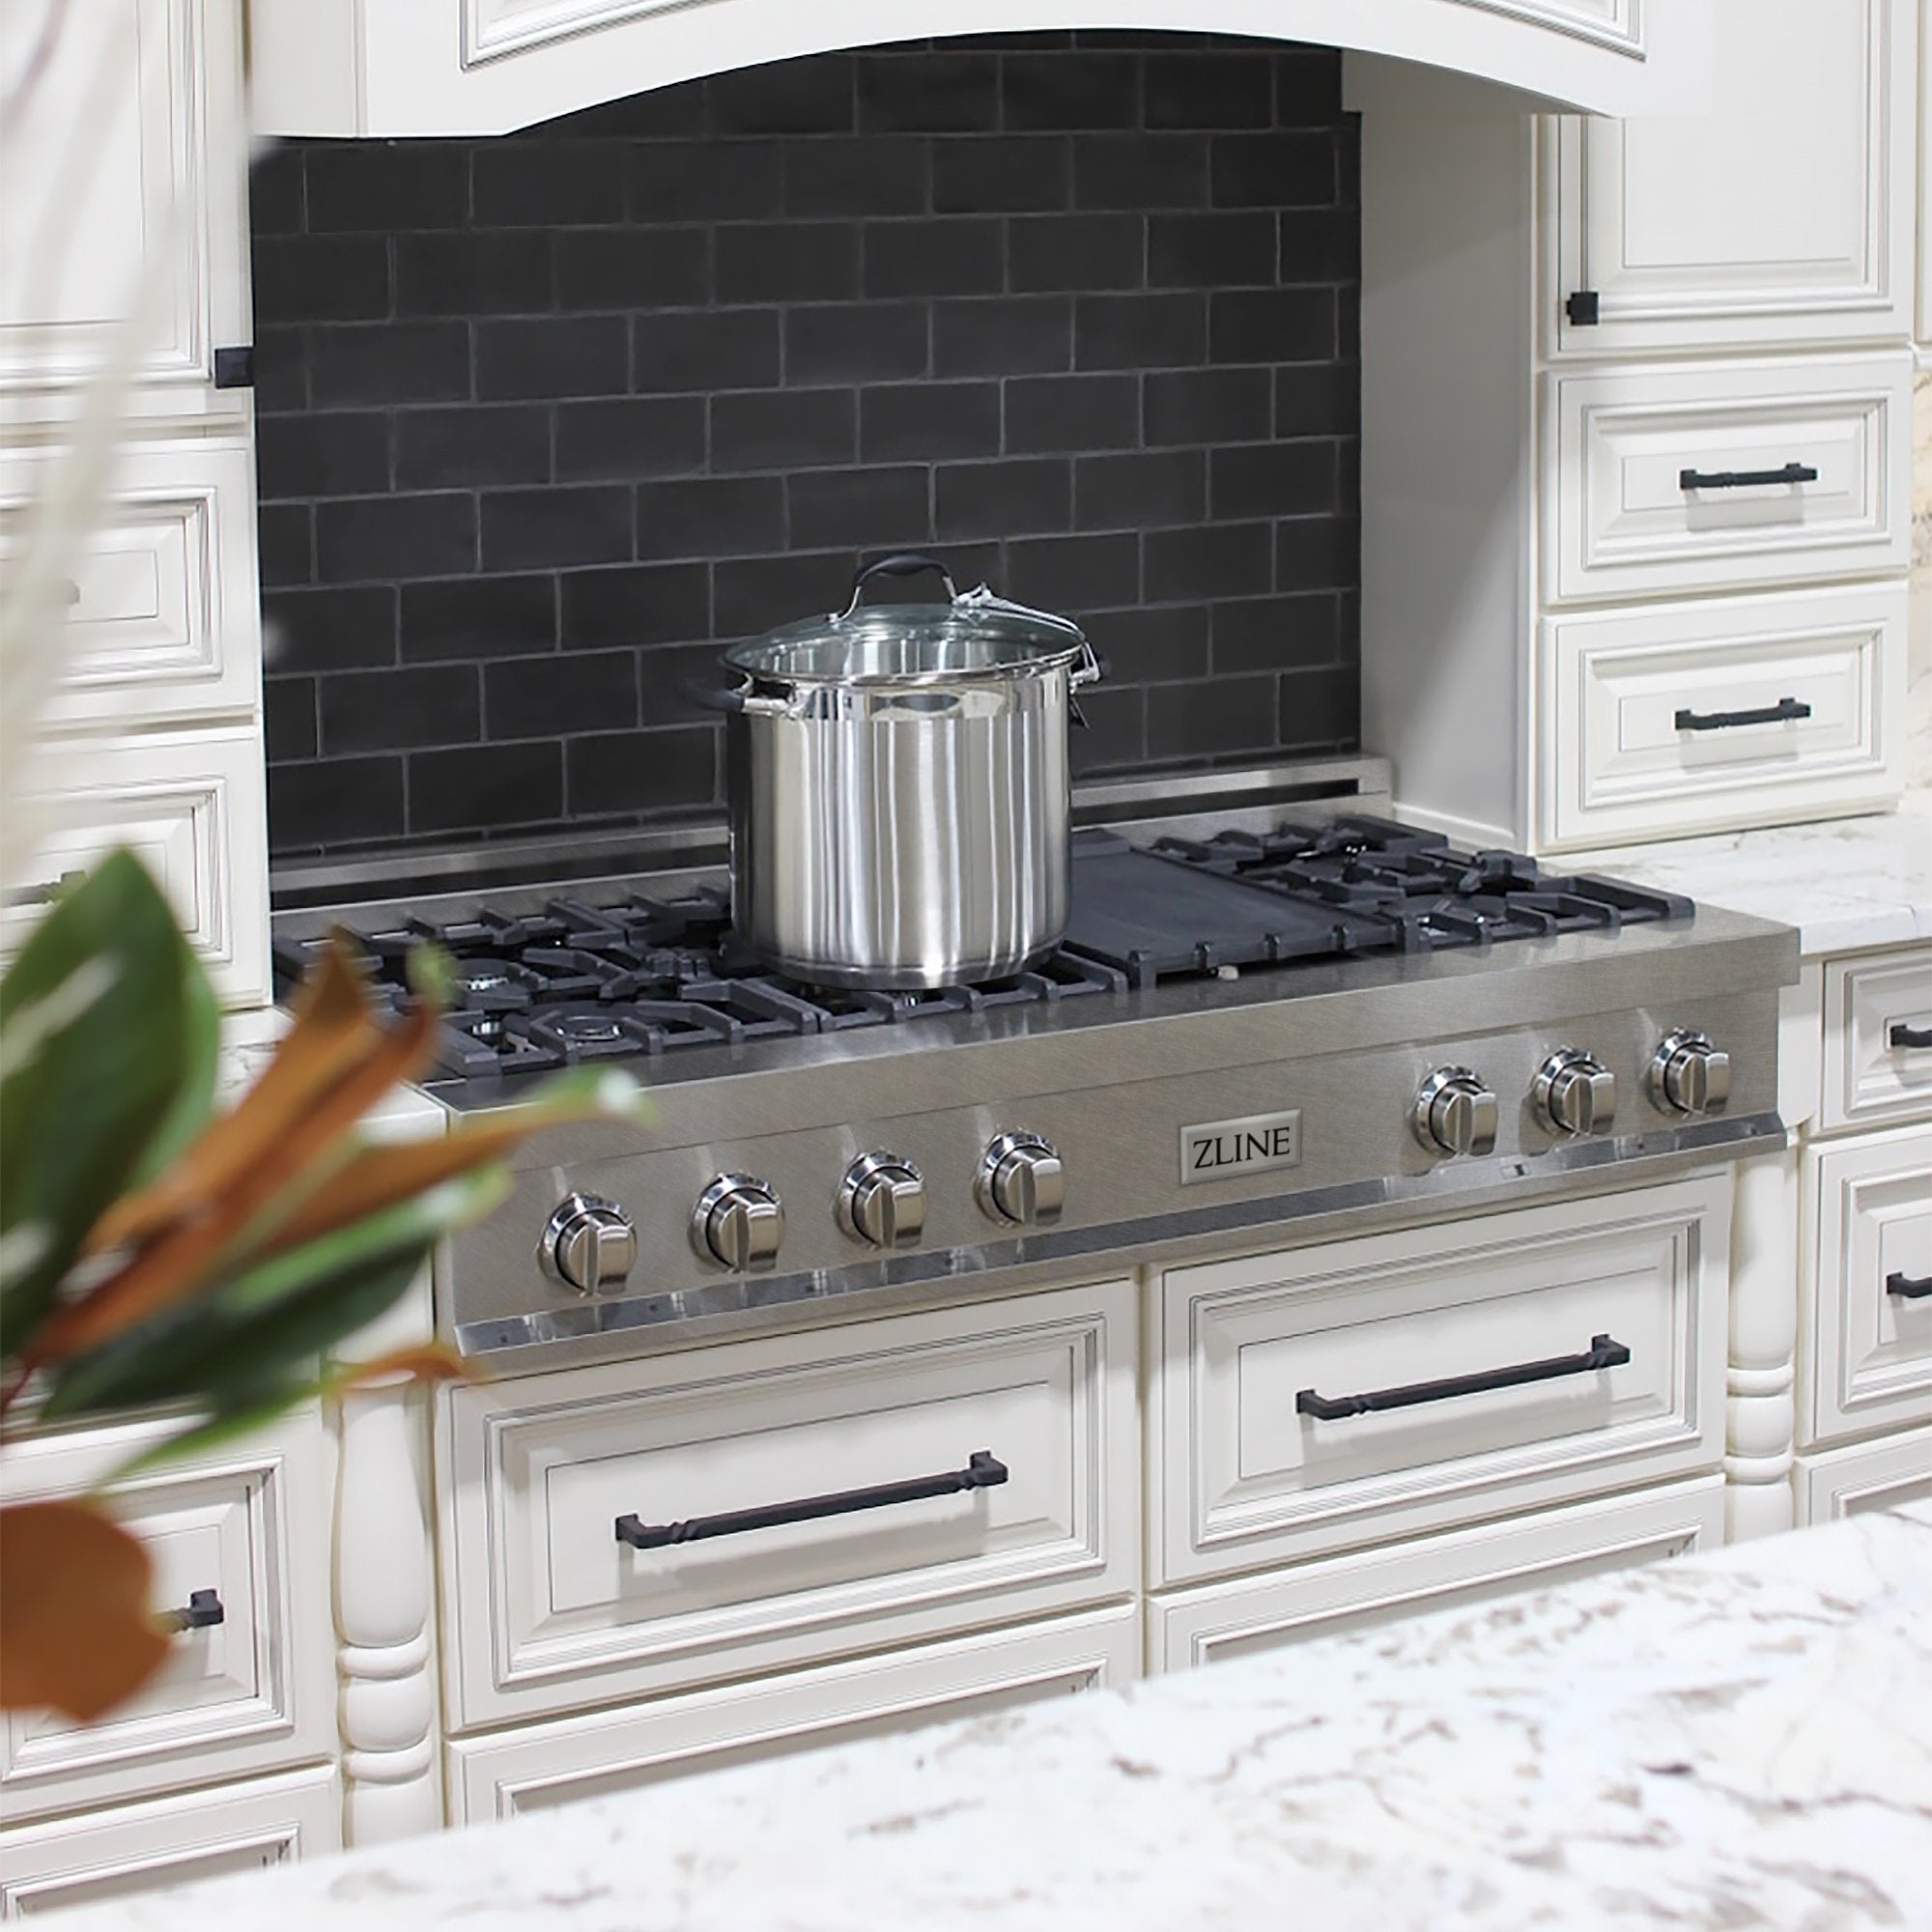 ZLINE 48" Porcelain Rangetop in DuraSnow® Stainless Steel with 7 Gas Burners - Rustic Kitchen & Bath - ZLINE Kitchen and Bath